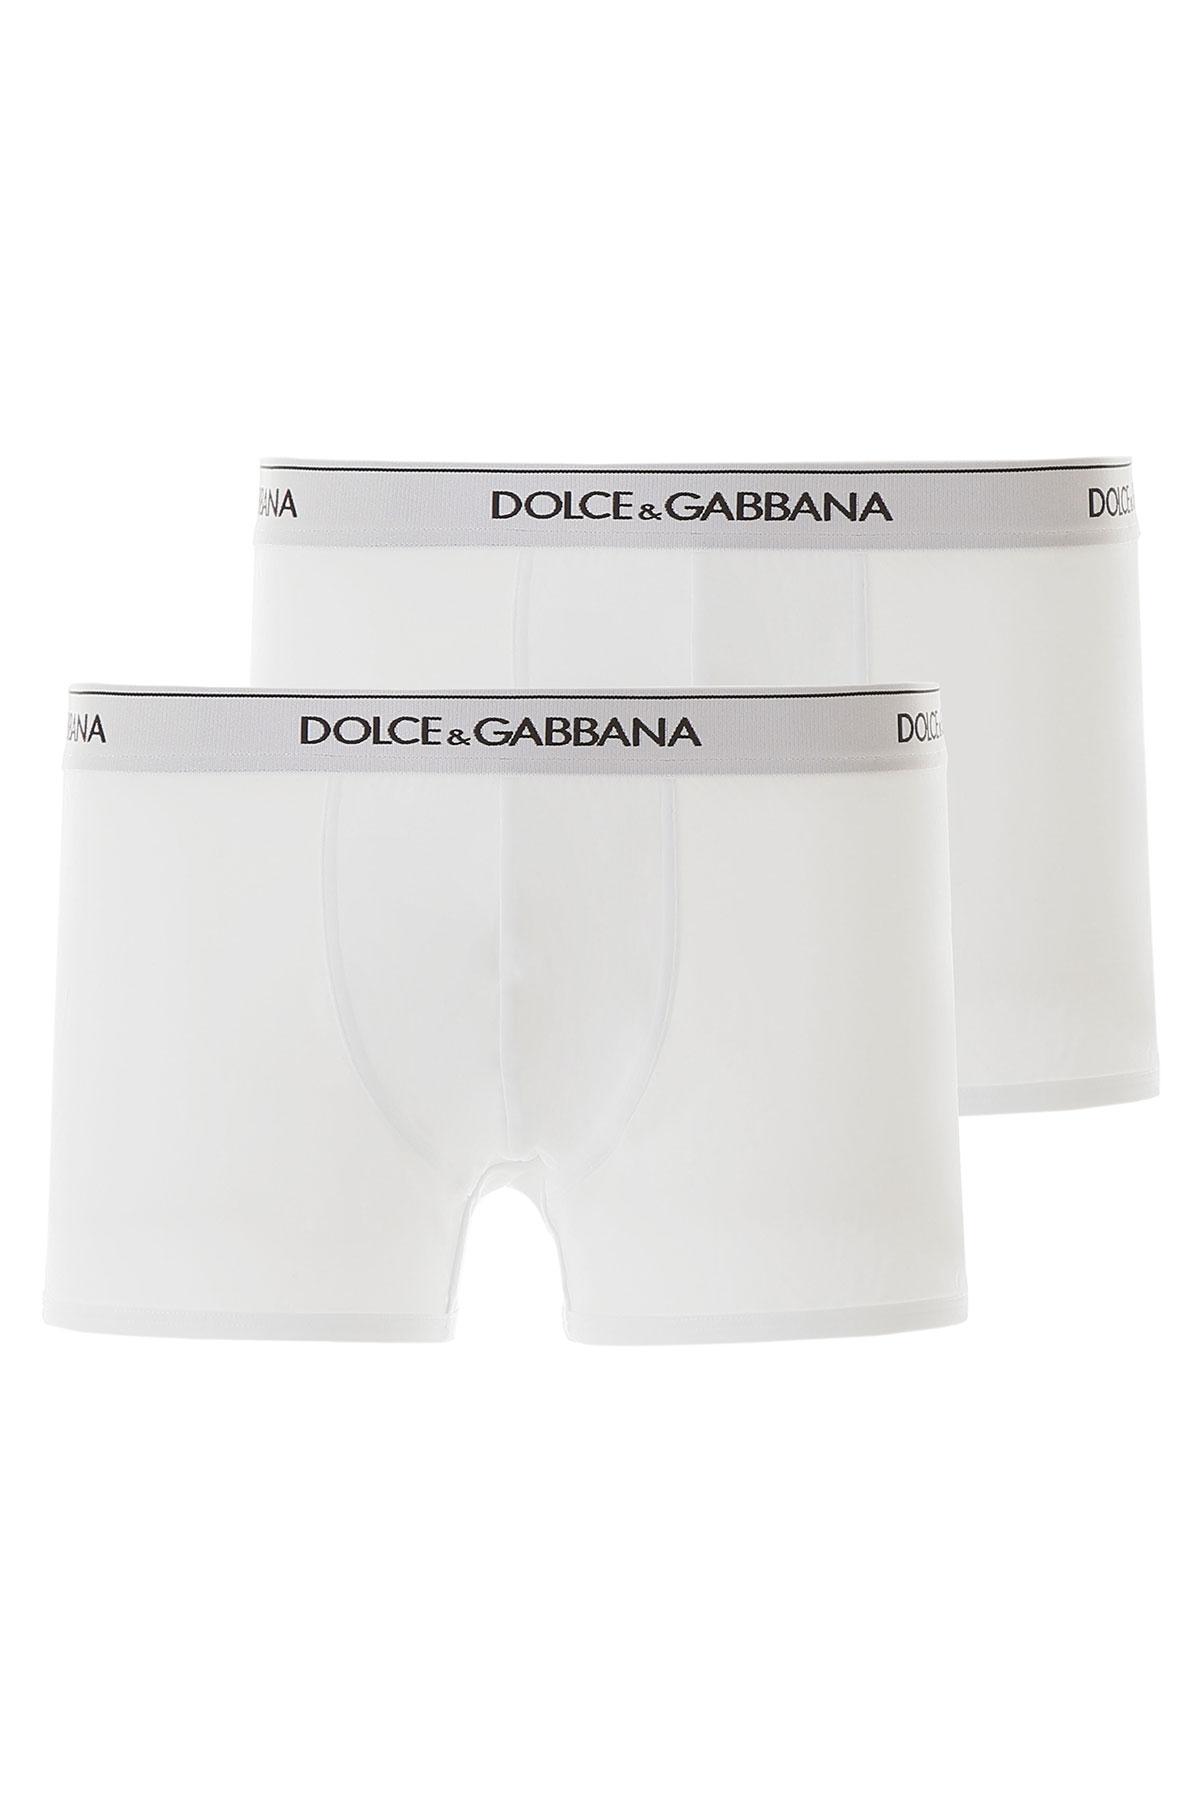 Dolce & Gabbana Bi Pack Underwear Boxer